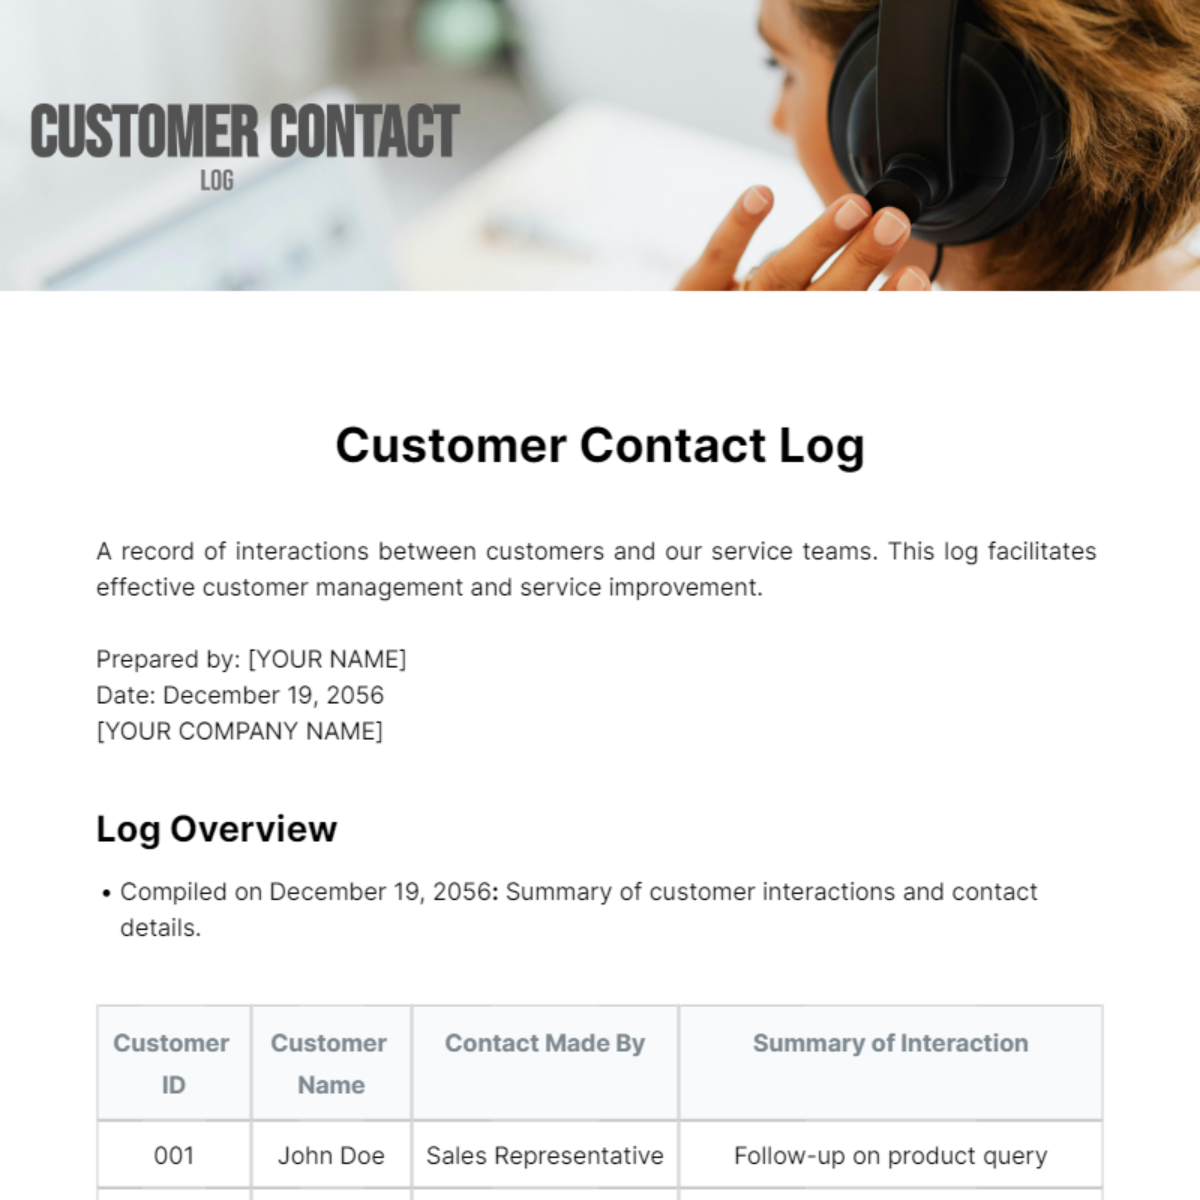 Customer Contact Log